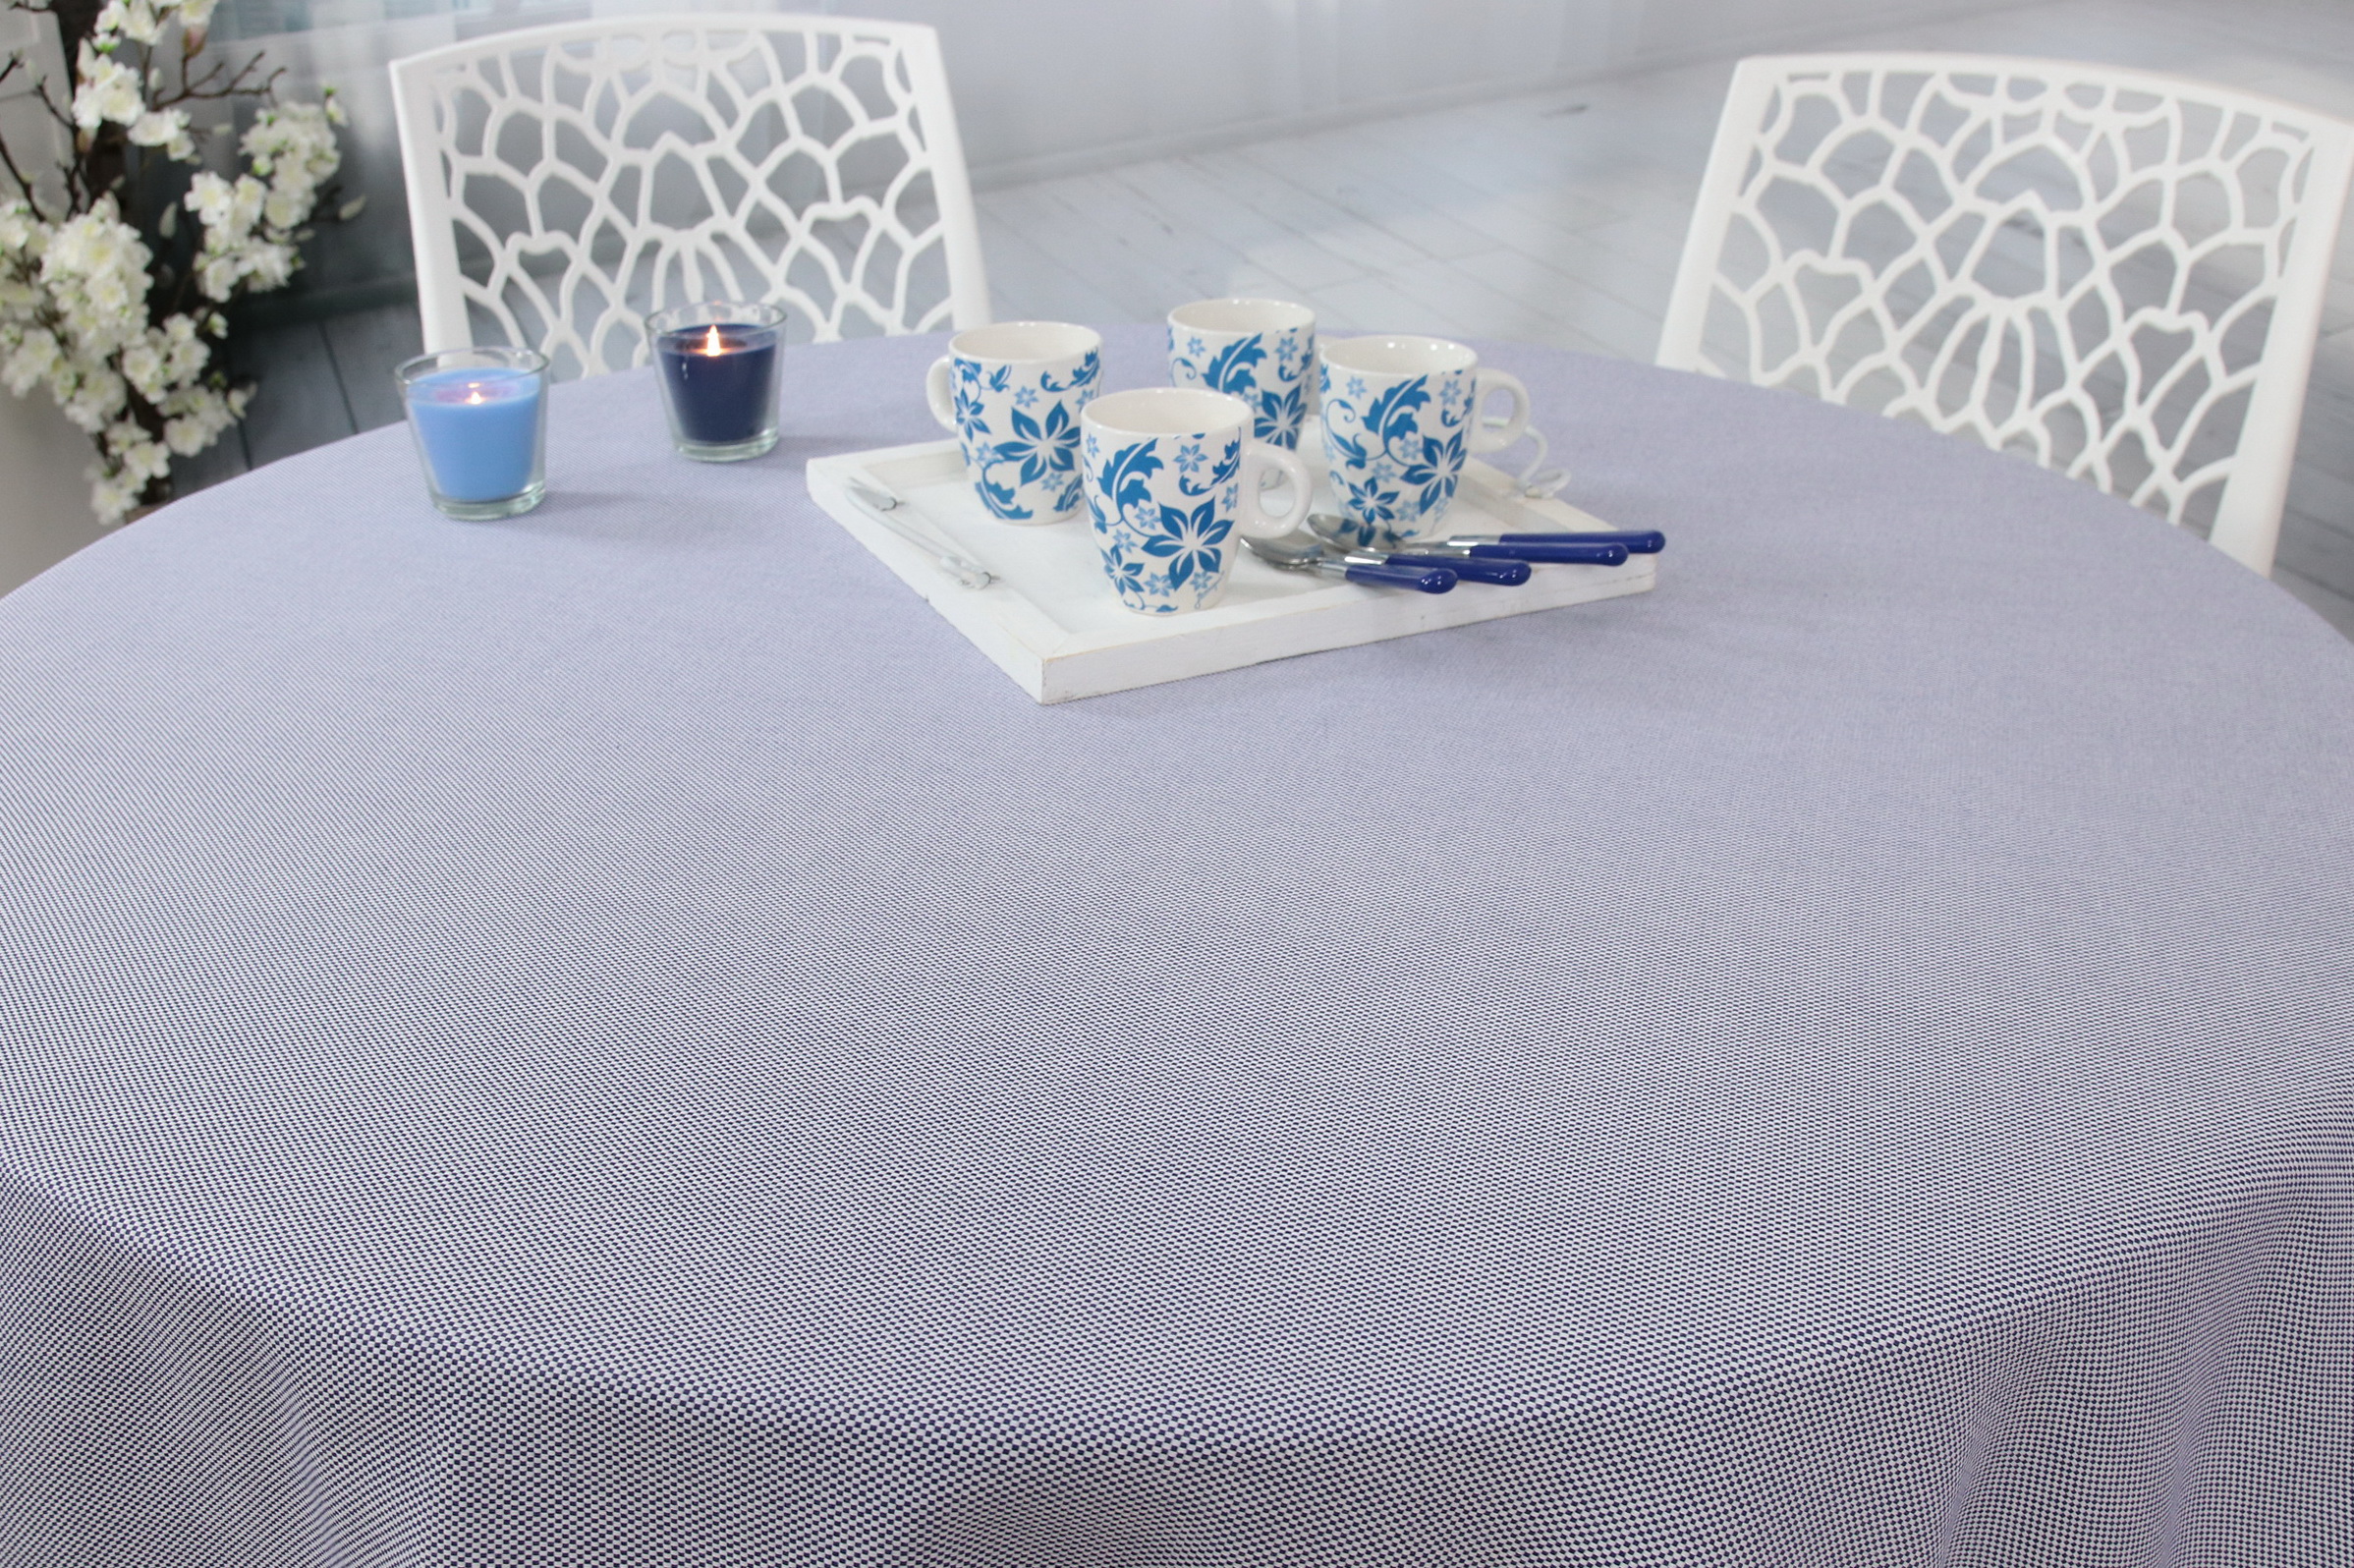 Tischdecke Blau Weiß feines Muster Bonita RUND Größe: Ø80 - Ø200 cm